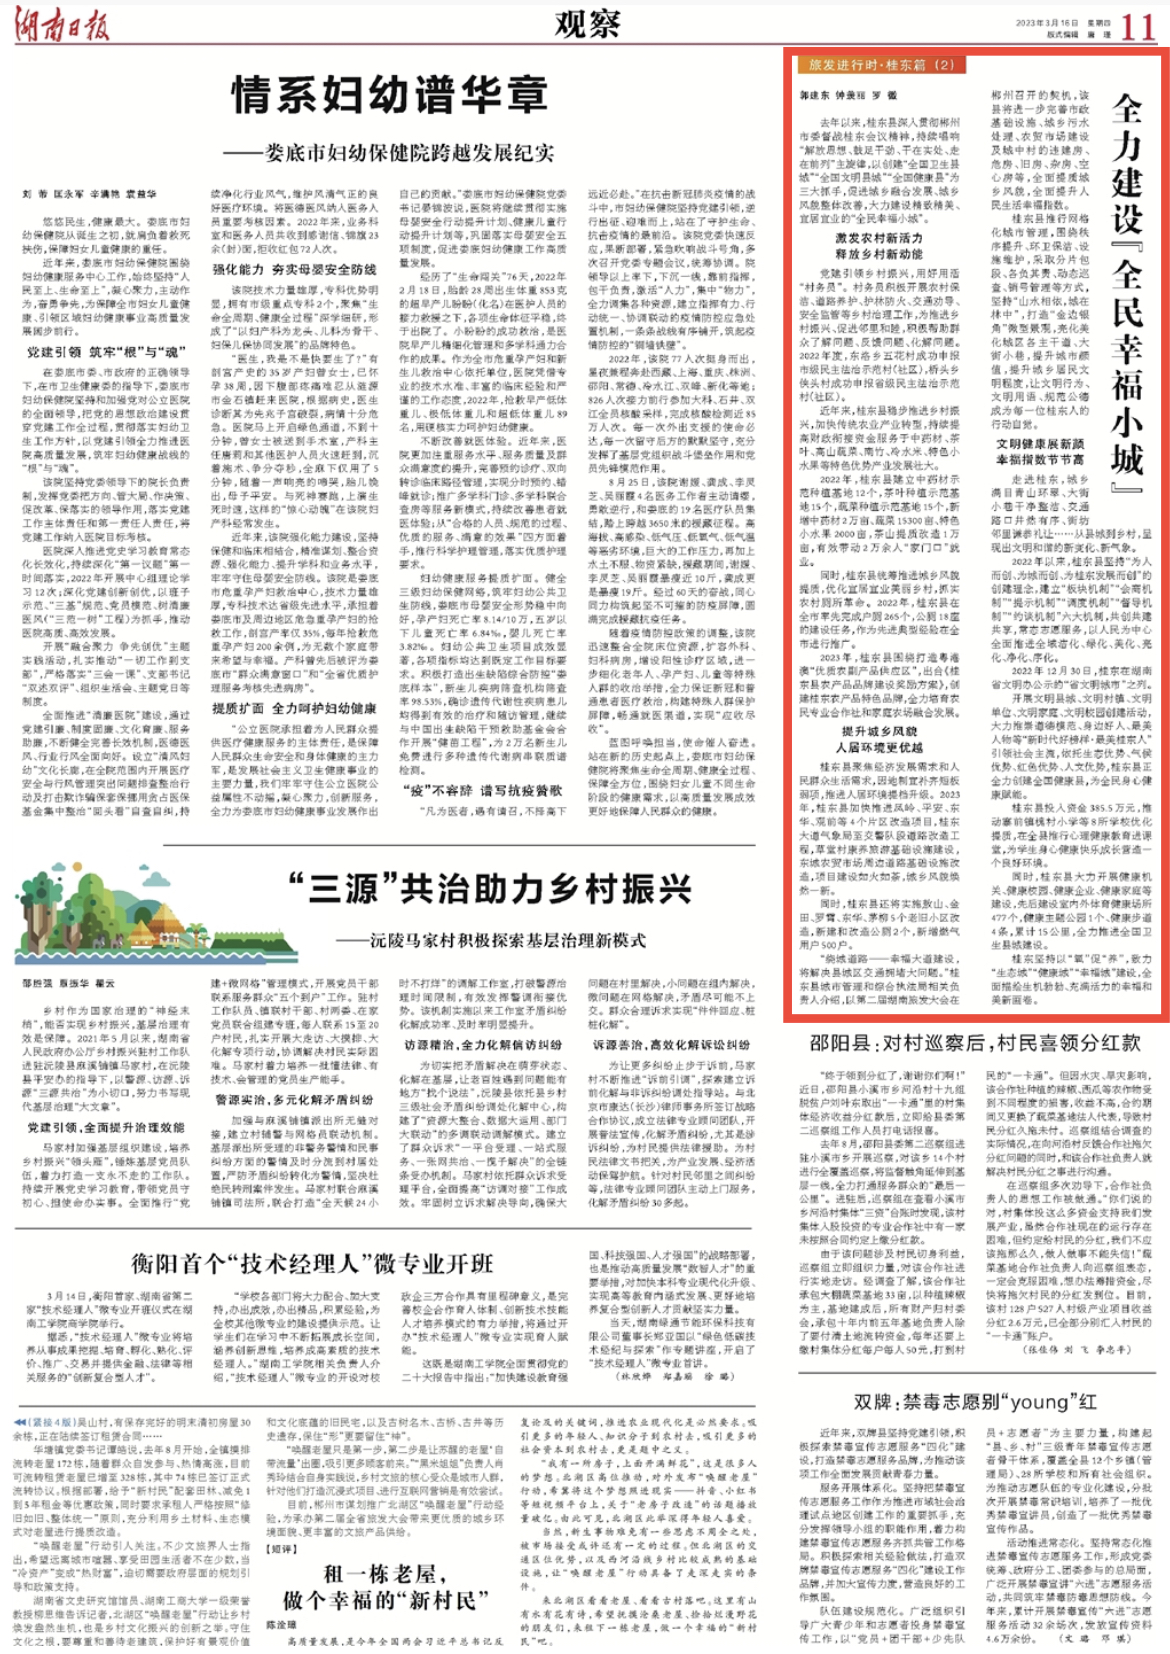 湖南日报深度丨桂东全力建设“全民幸福小城”